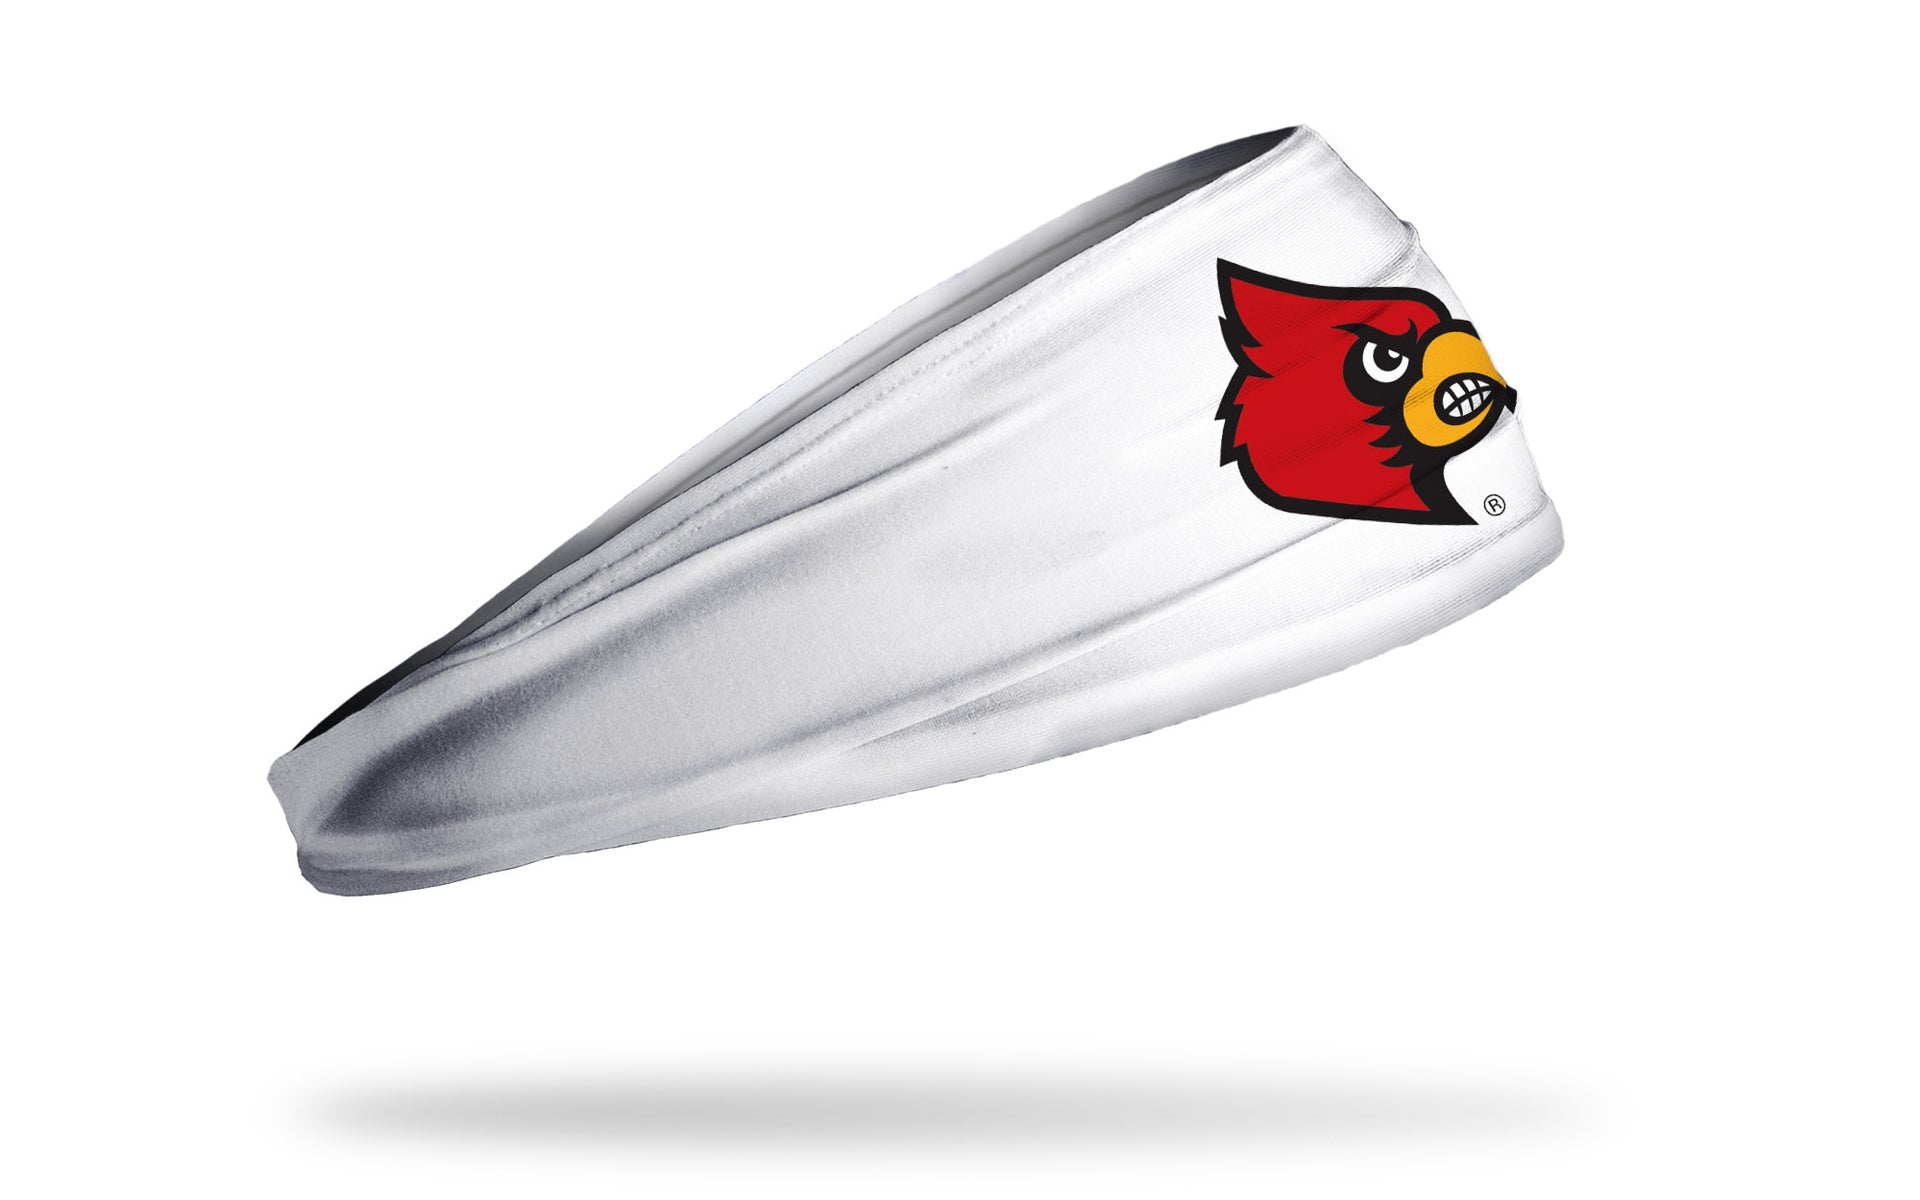 University of Louisville Headband, Bandana Louisville Cardinals